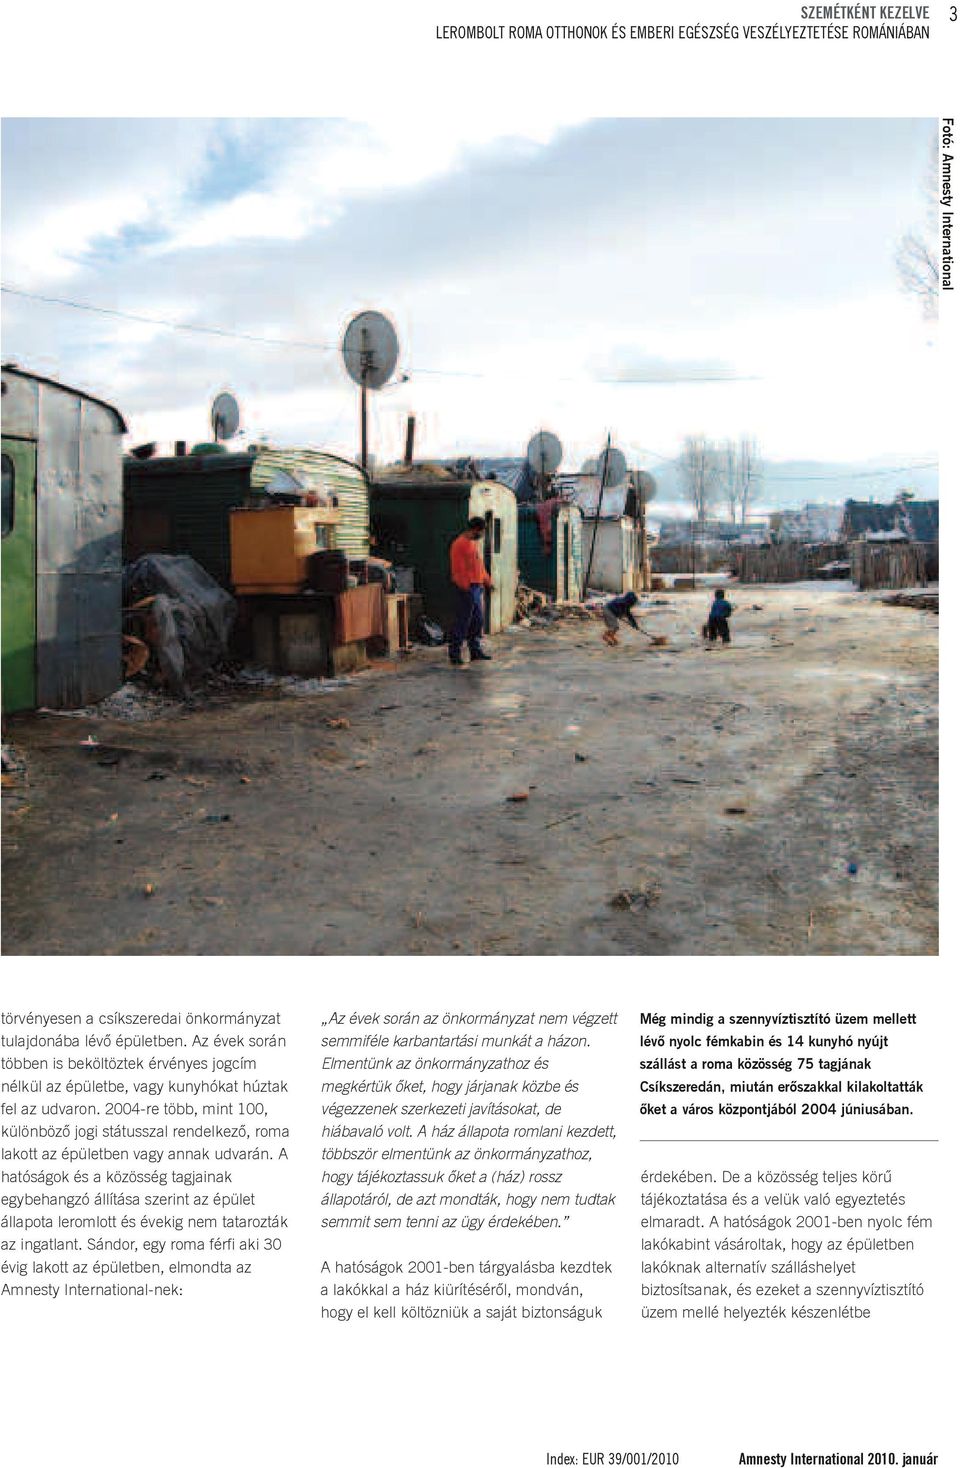 2004-re több, mint 100, különböző jogi státusszal rendelkező, roma lakott az épületben vagy annak udvarán.